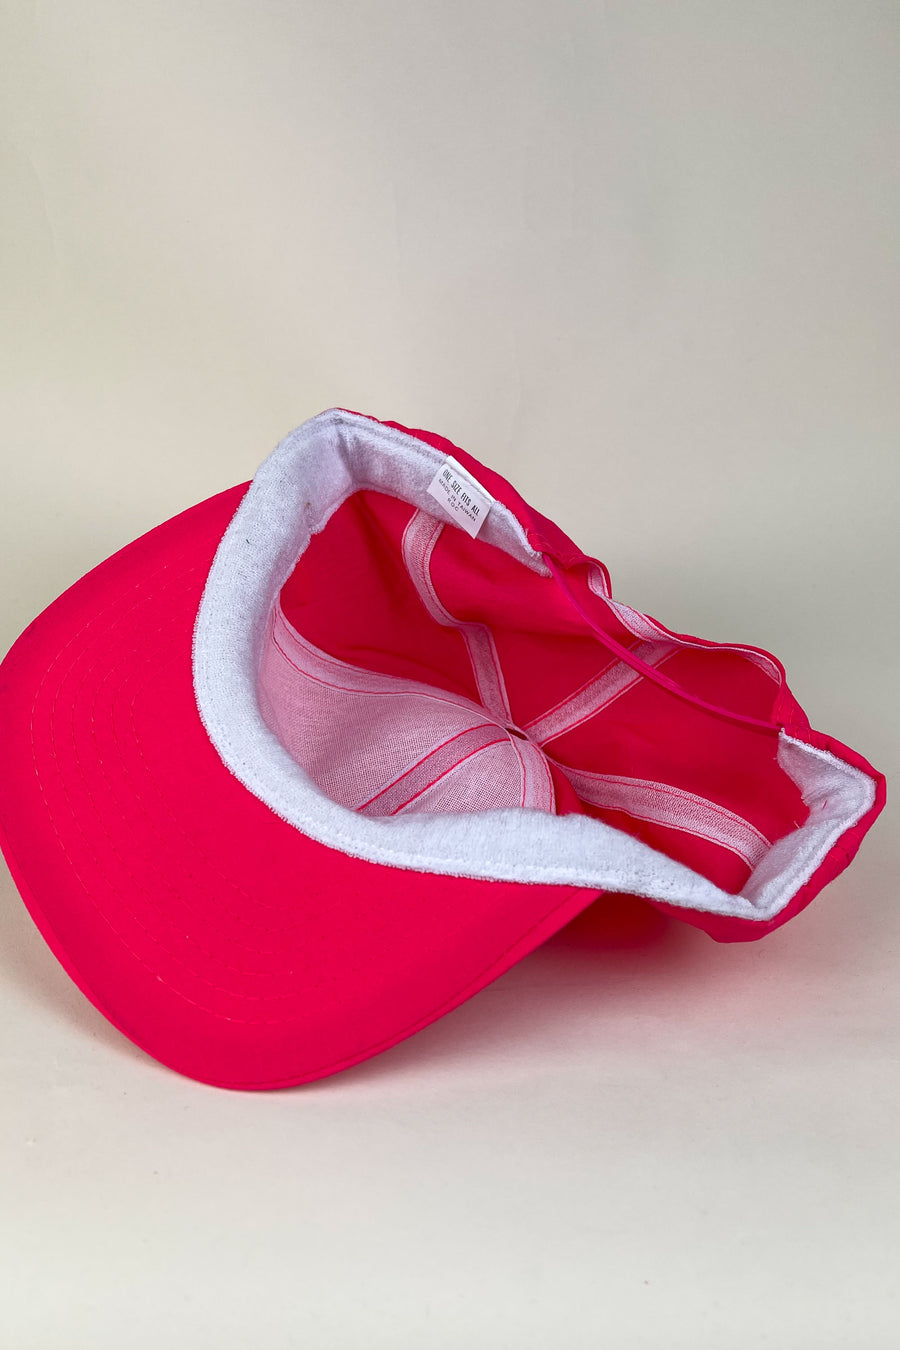 Vintage Deadstock Red/Pink Snapback Hat